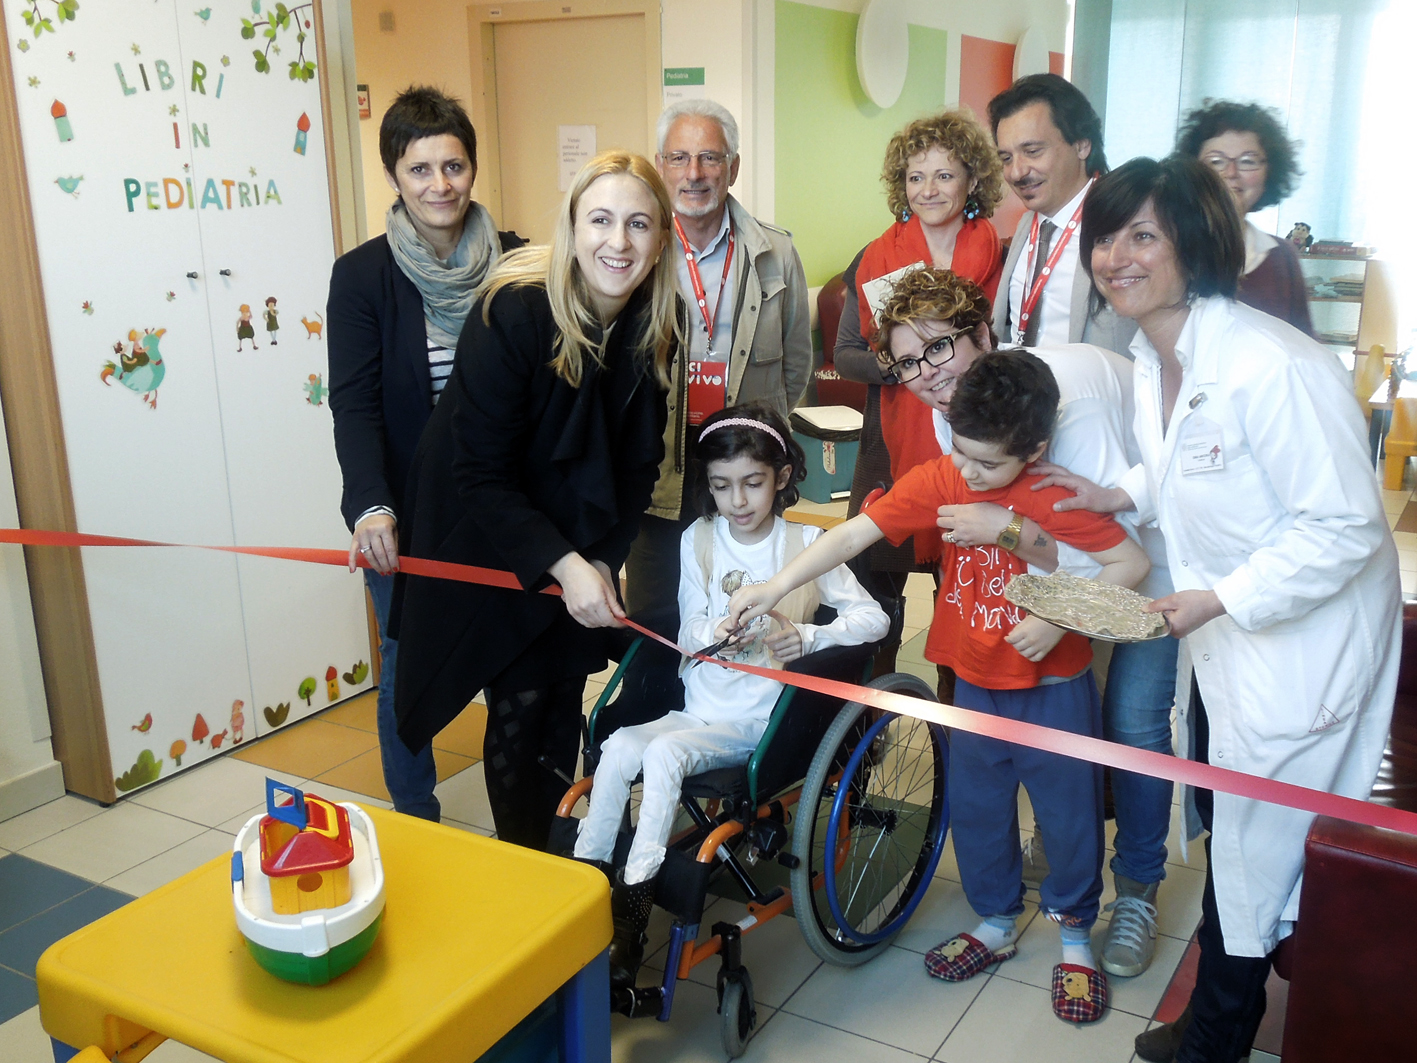 Inaugurata la biblioteca in pediatria: Sara, una piccola paziente, dona due libri all'Infermi di Rimini